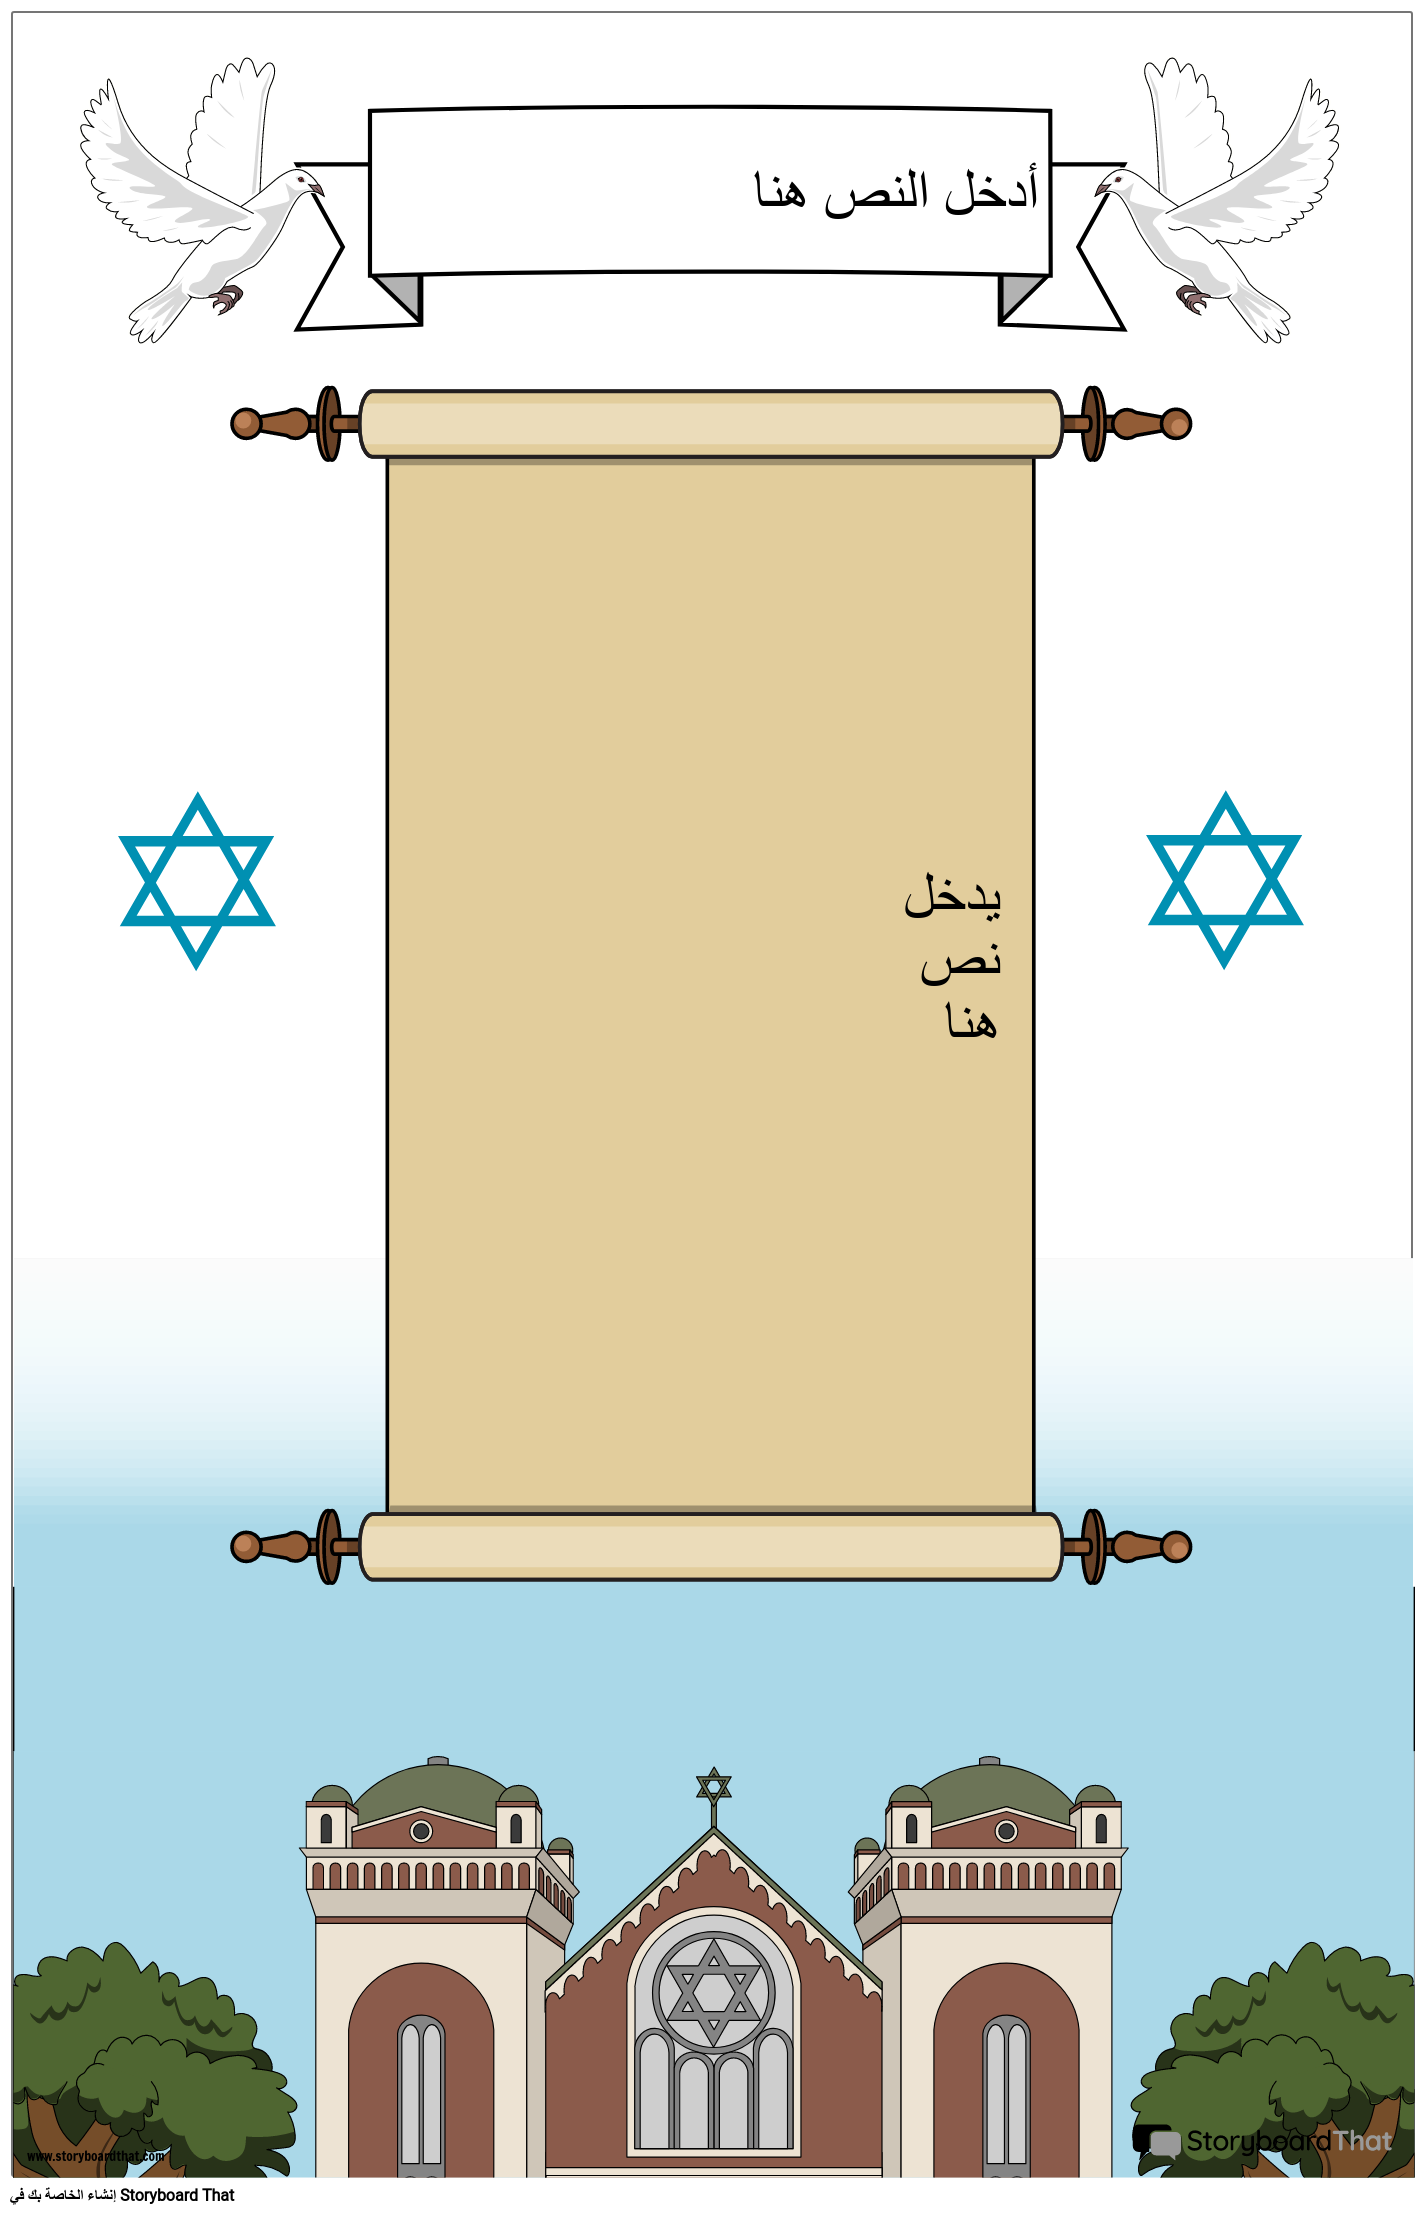 ملصق يهودي مع التمرير